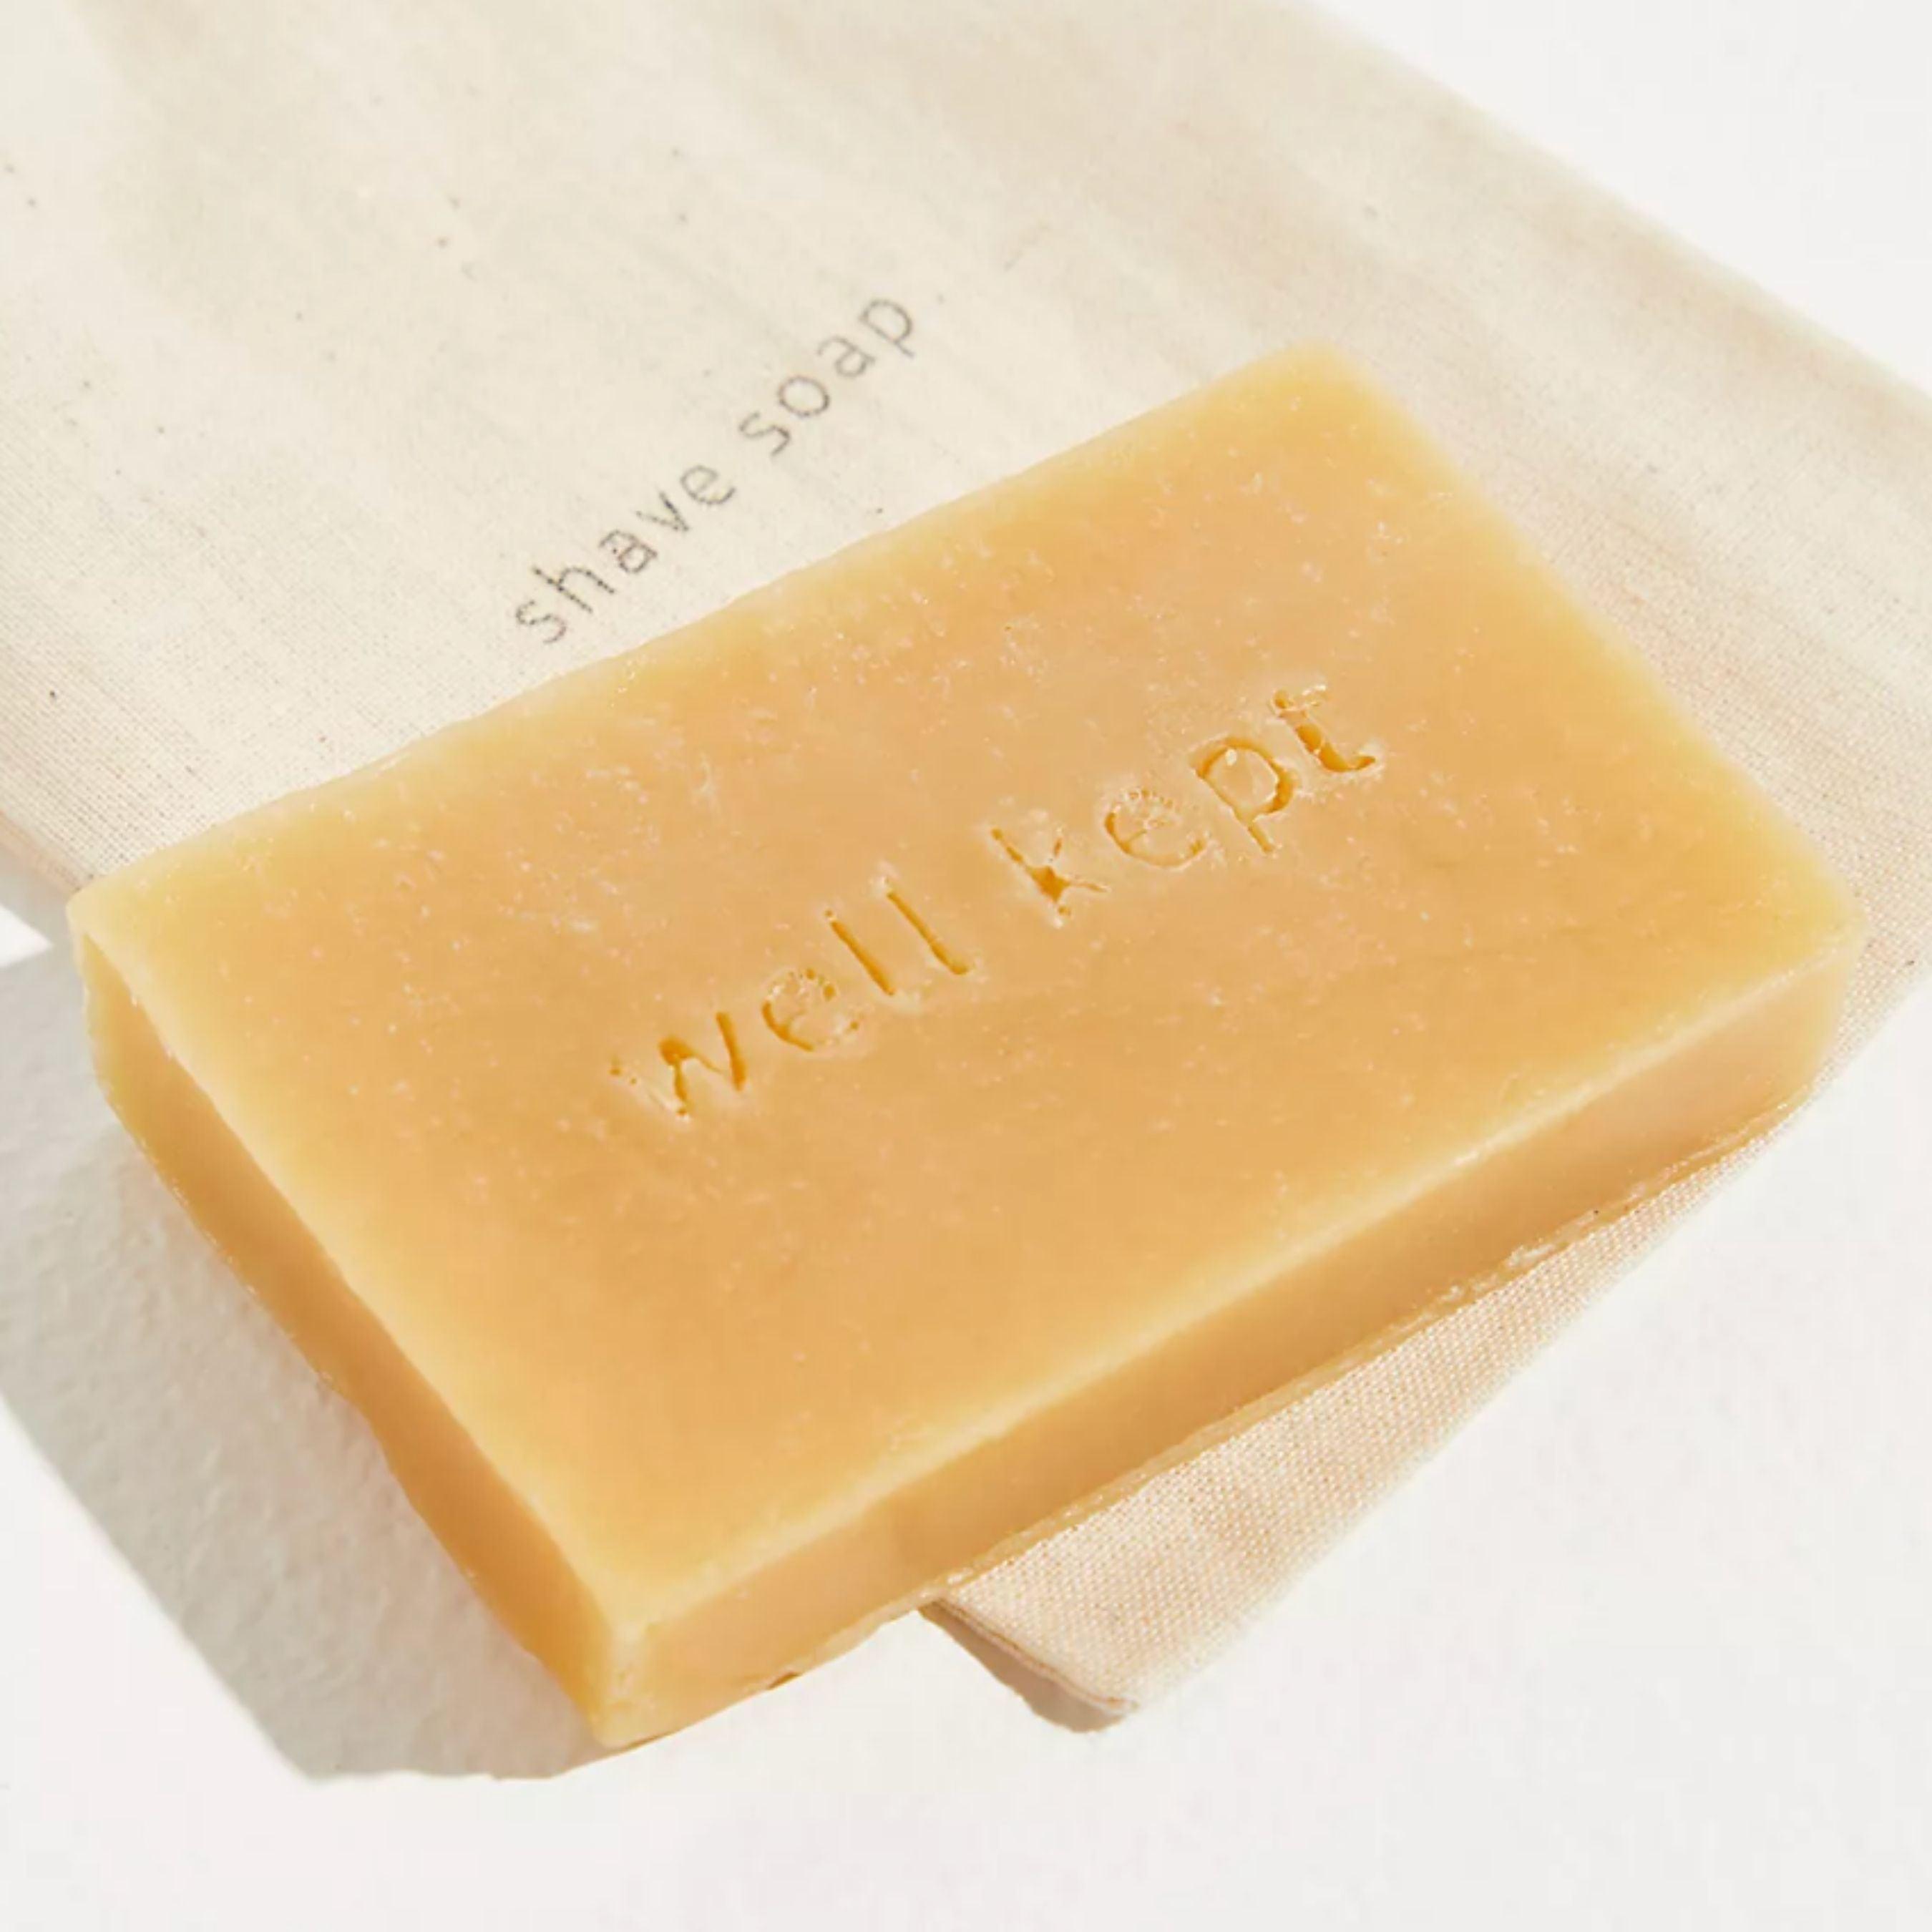 citrus shave soap - local - letsbelocal.ca